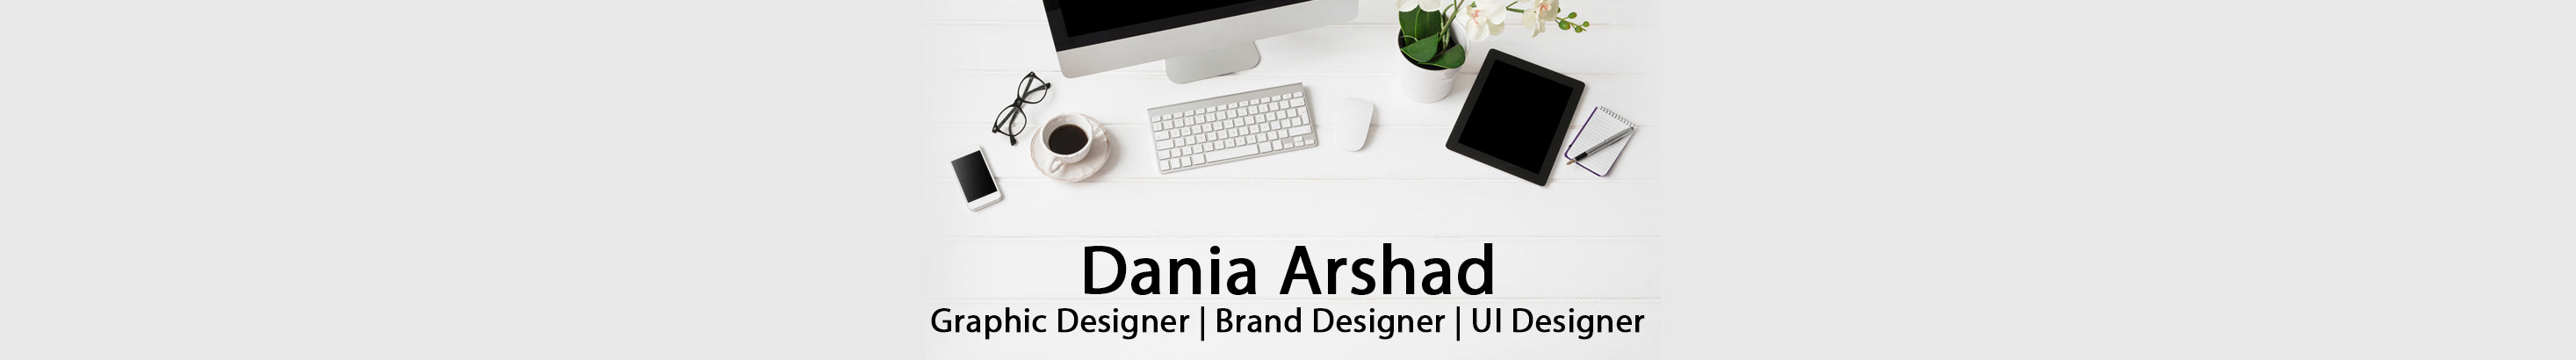 Profil-Banner von Dania Arshad